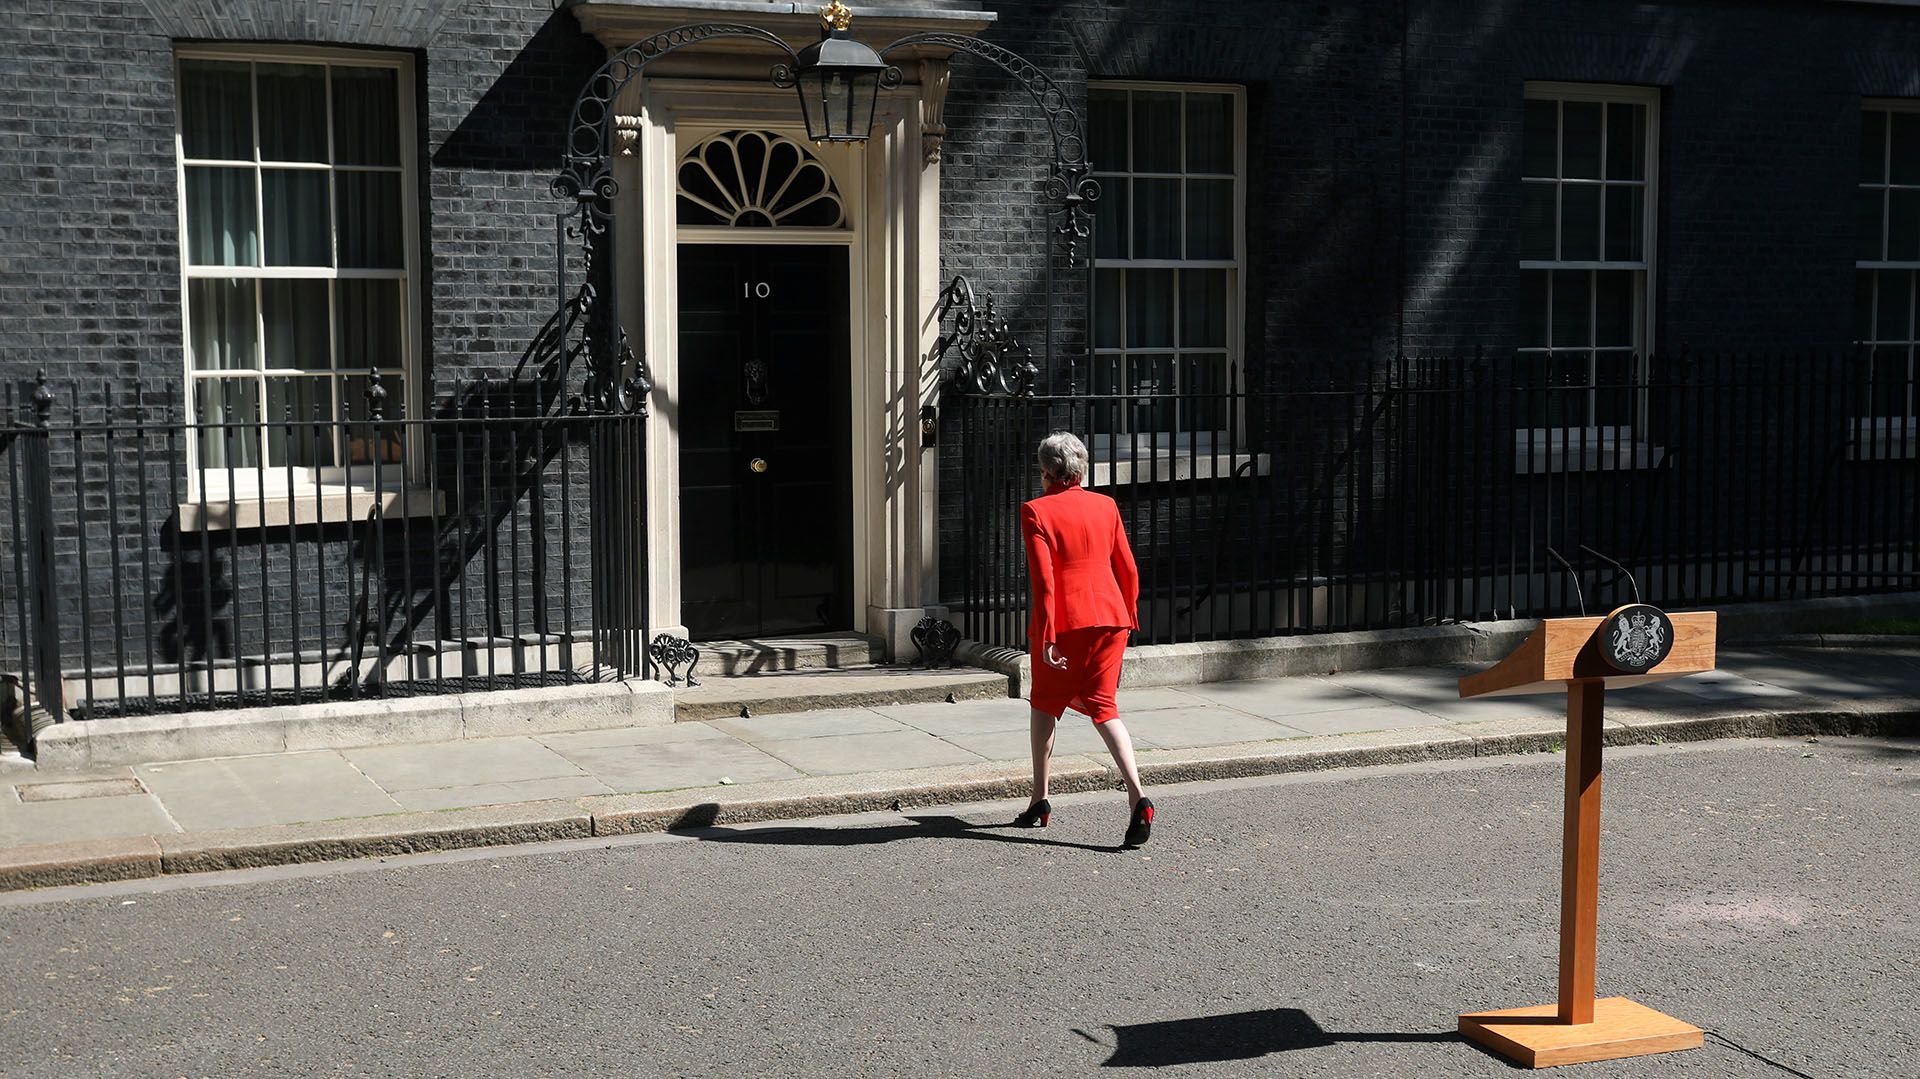 Theresa May May dio a conocer su decisión en una declaración ante la residencia oficial del 10 de Downing Street, en Londres (Photo by ISABEL INFANTES / AFP)